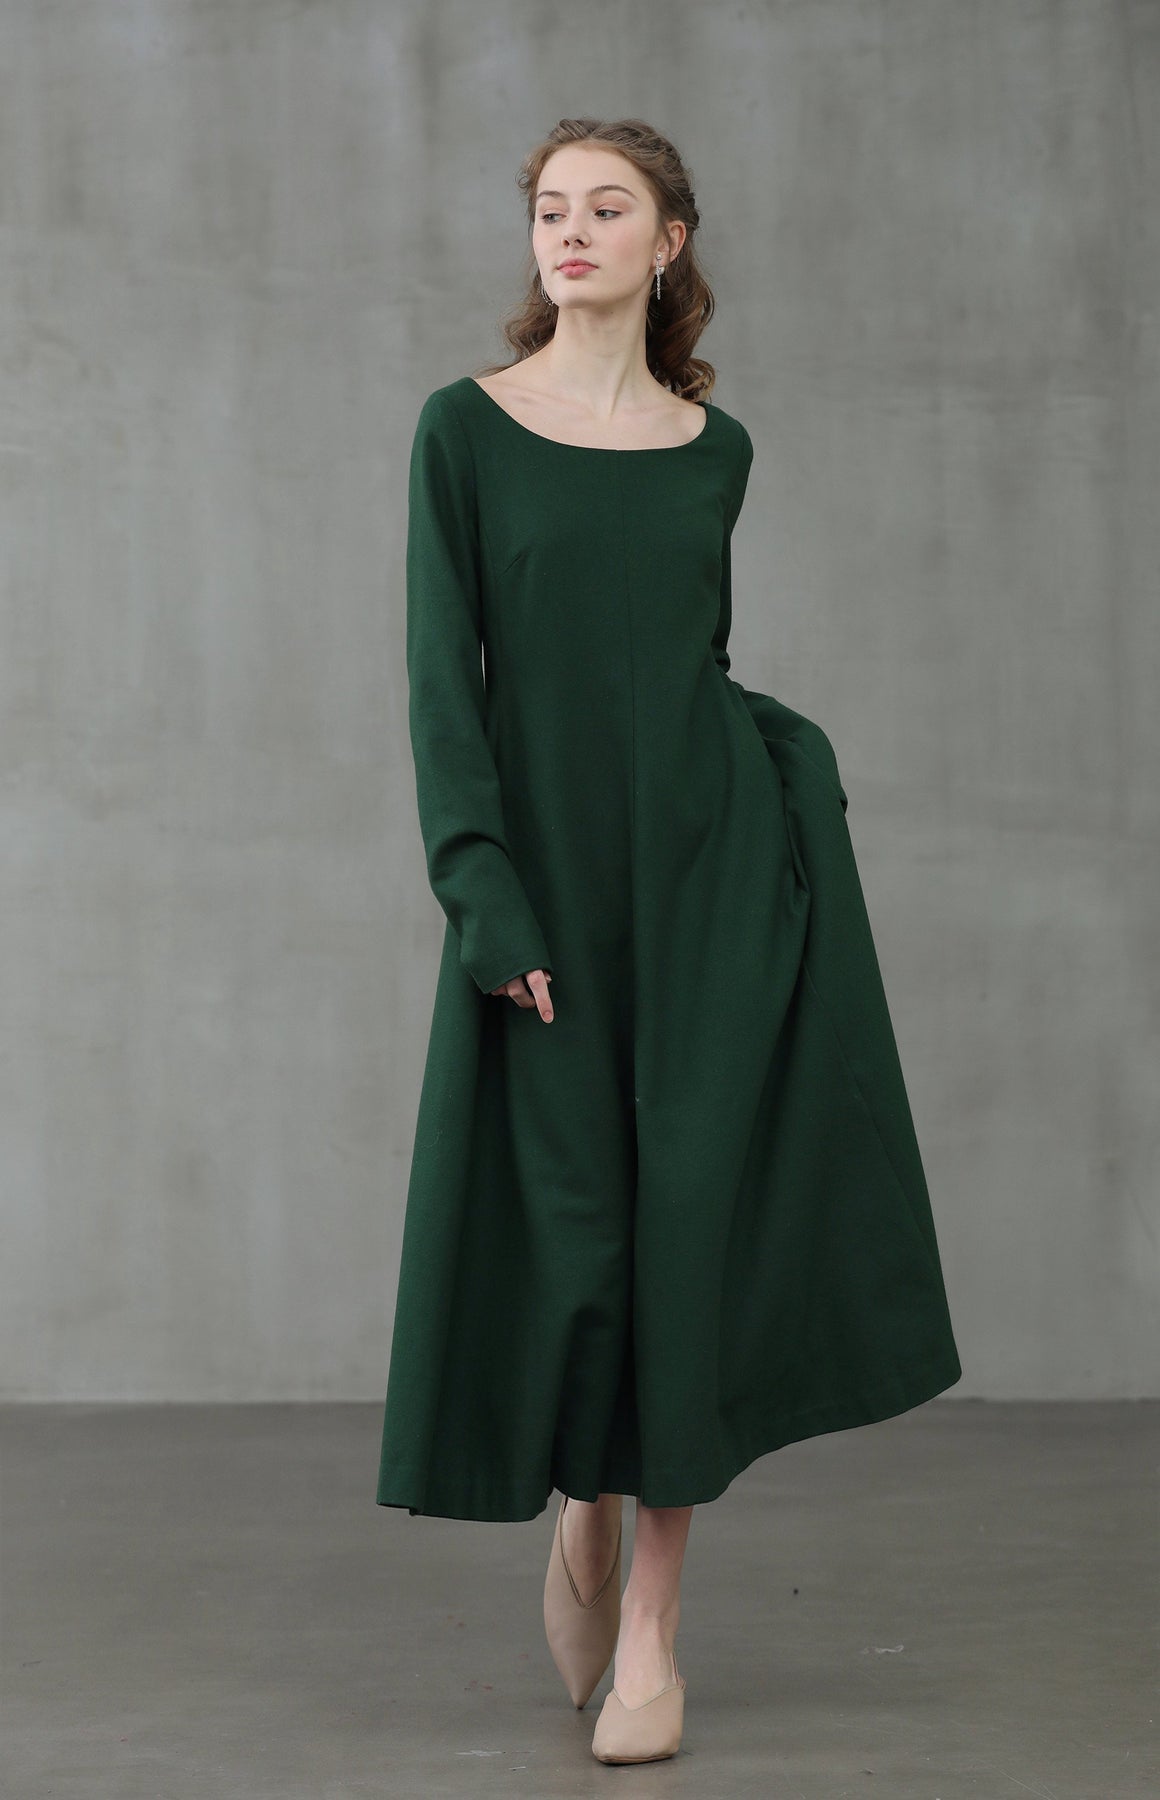 Mistletoe 17 | 100% wool green dress – Linennaive